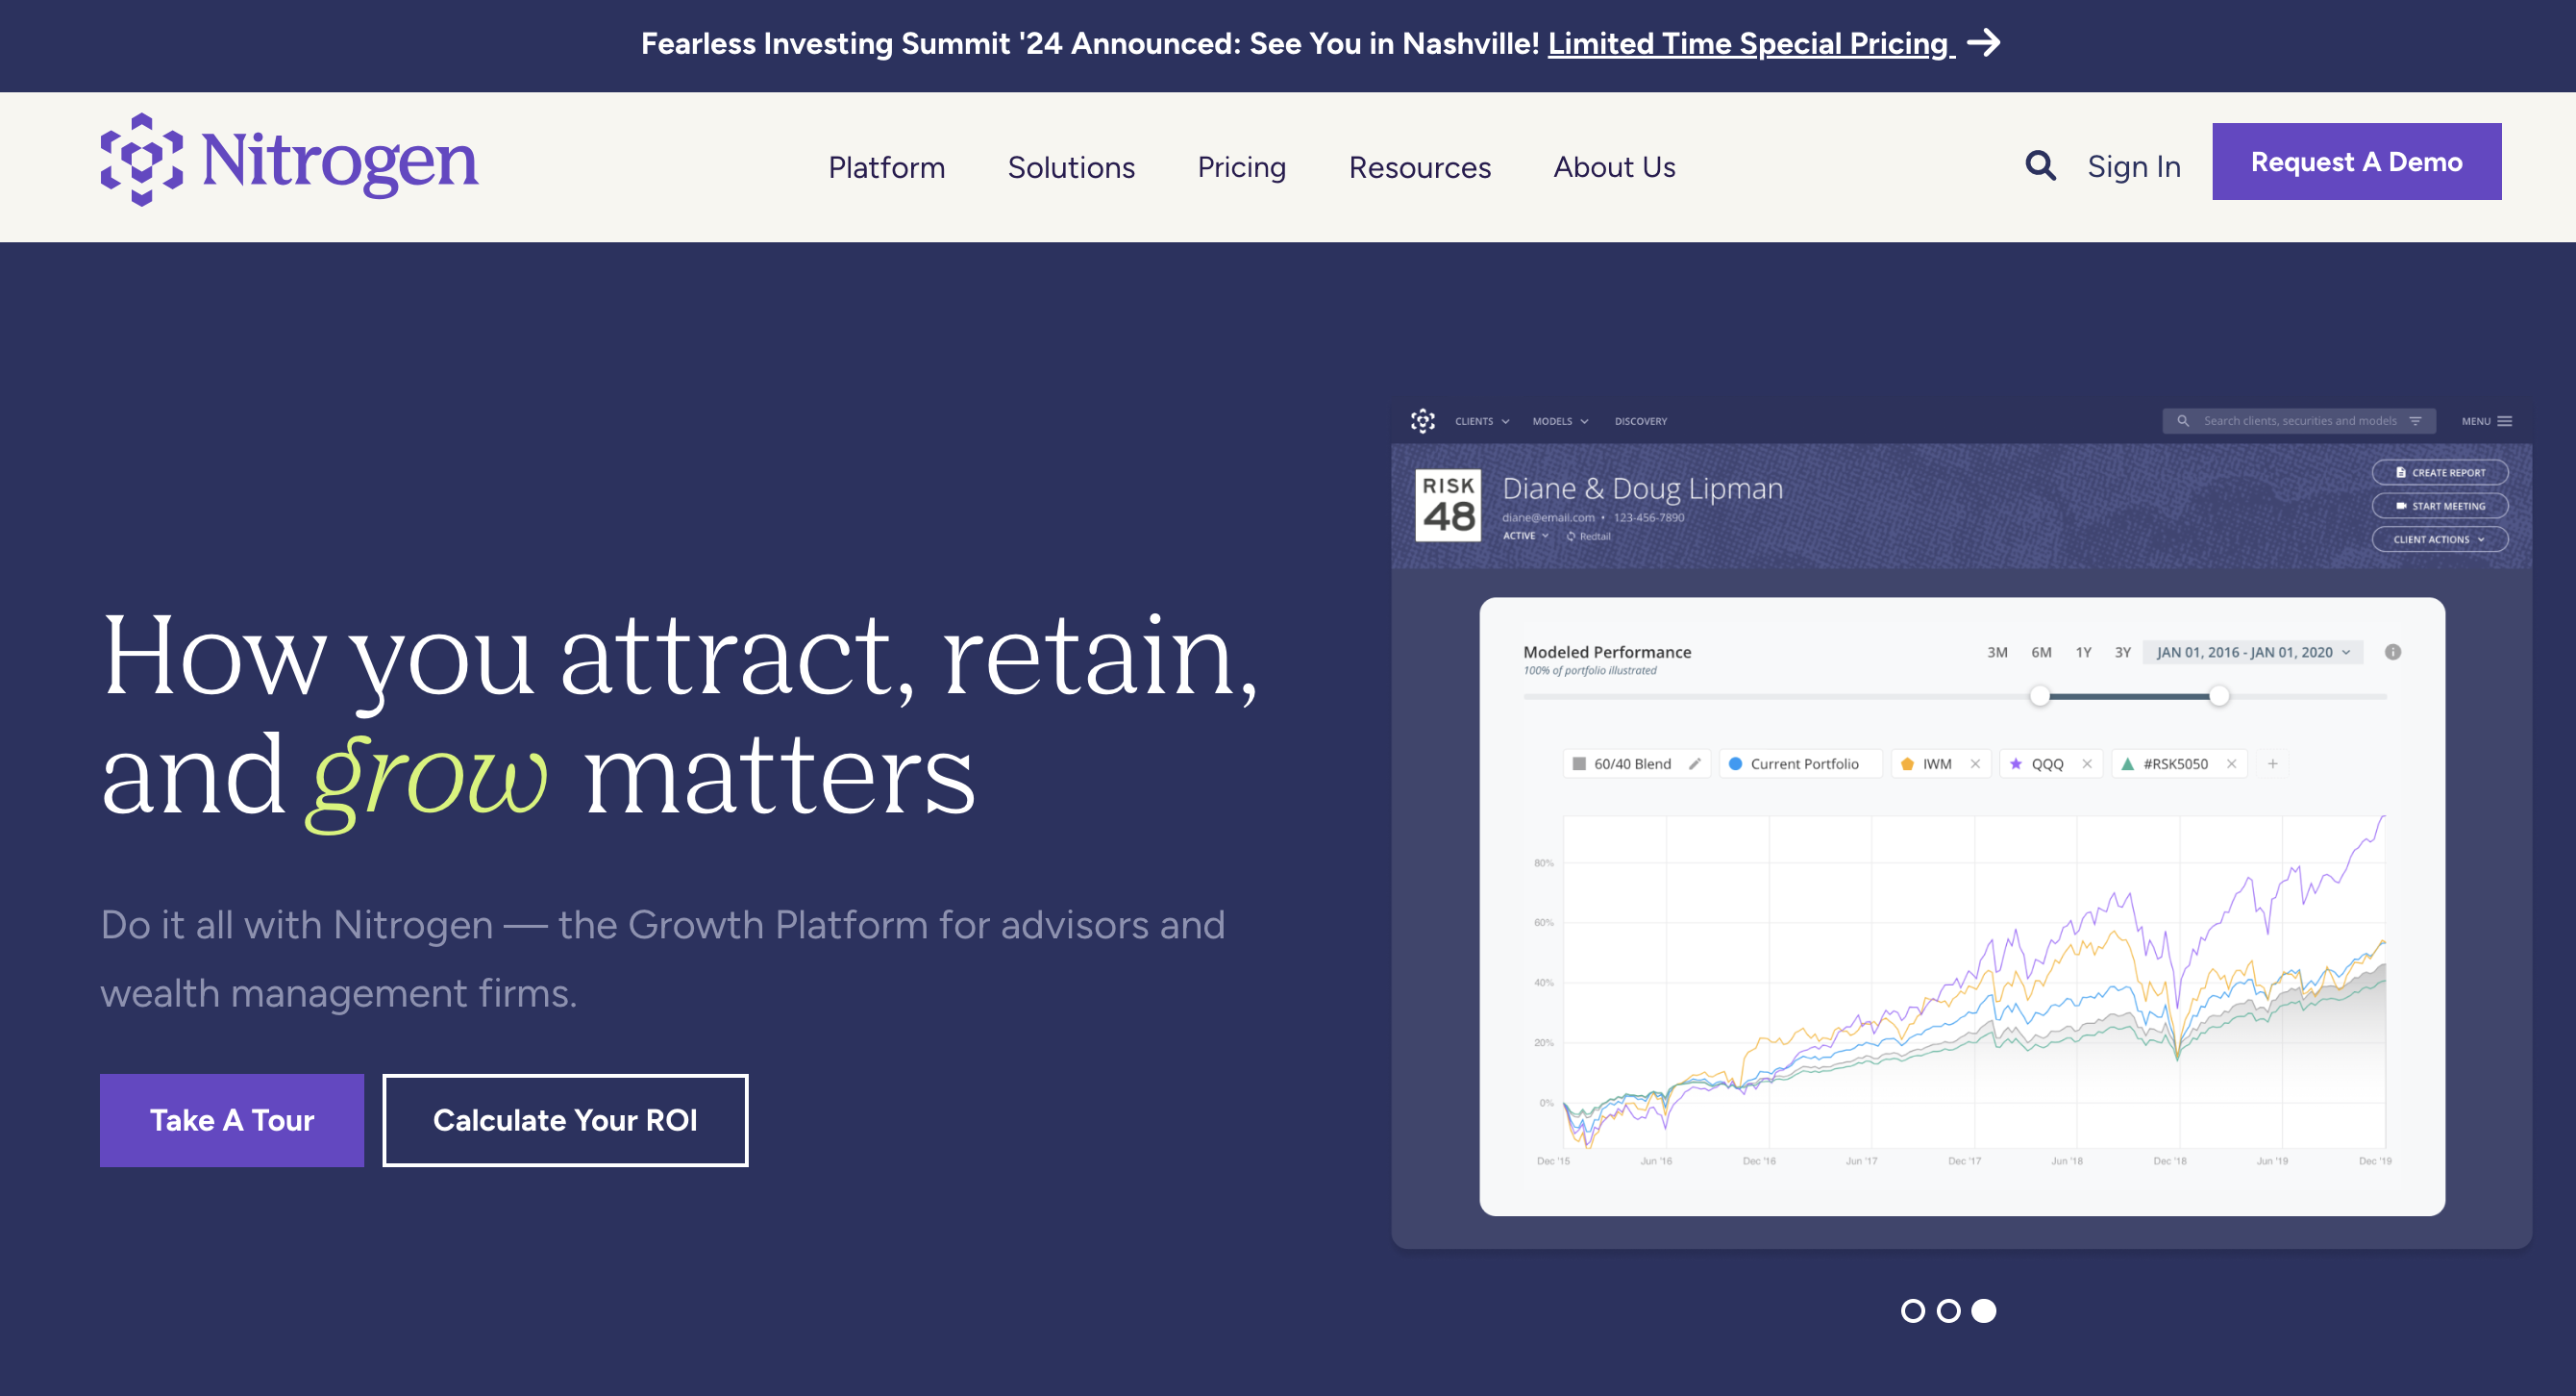 SmartAsset: Portfolio Visualizer Tool Options for Financial Advisors